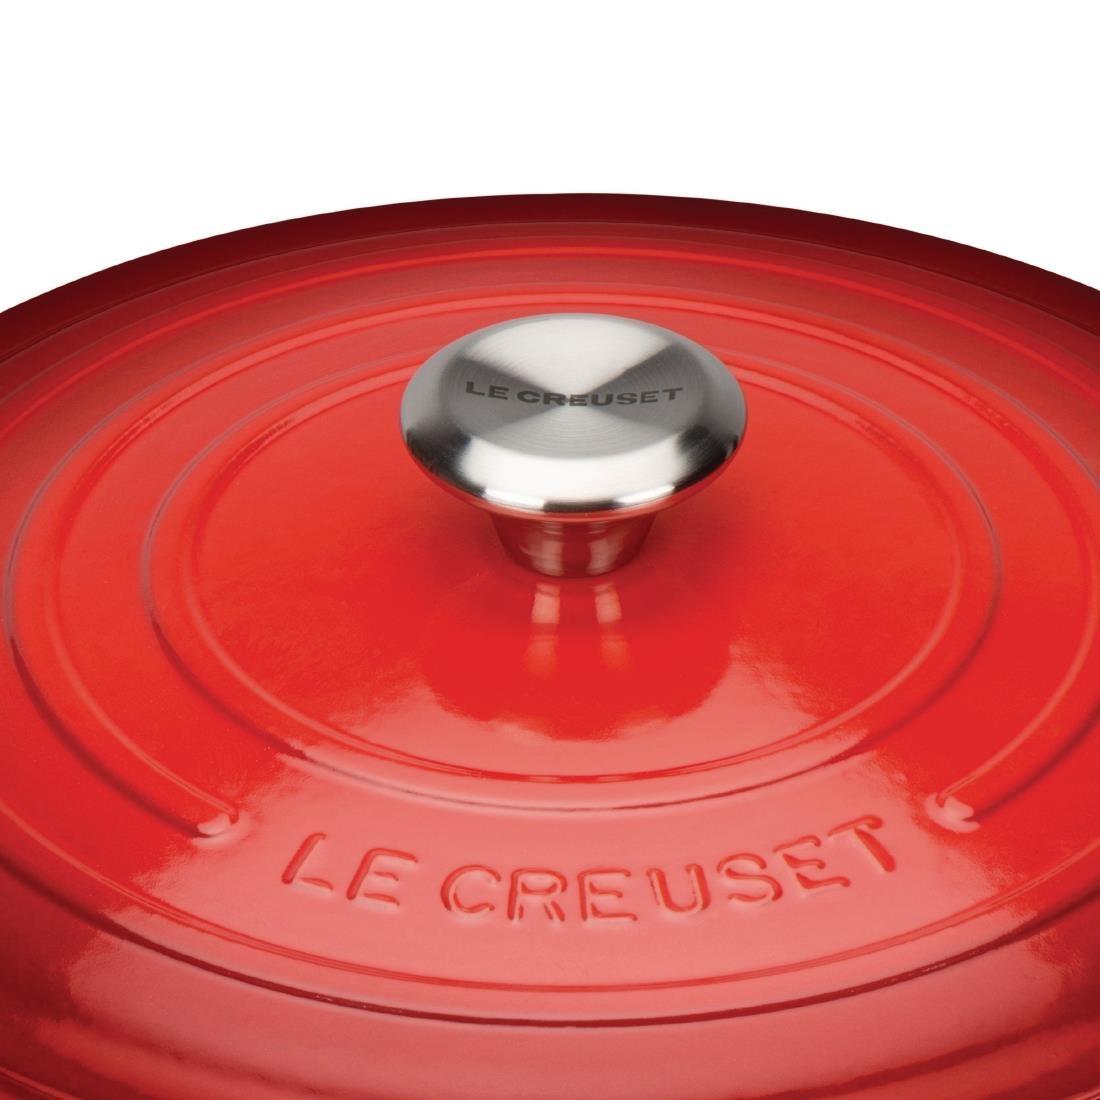 Le Creuset Cast Iron Round Casserole 20cm 2.4L Cerise - DR453  - 4